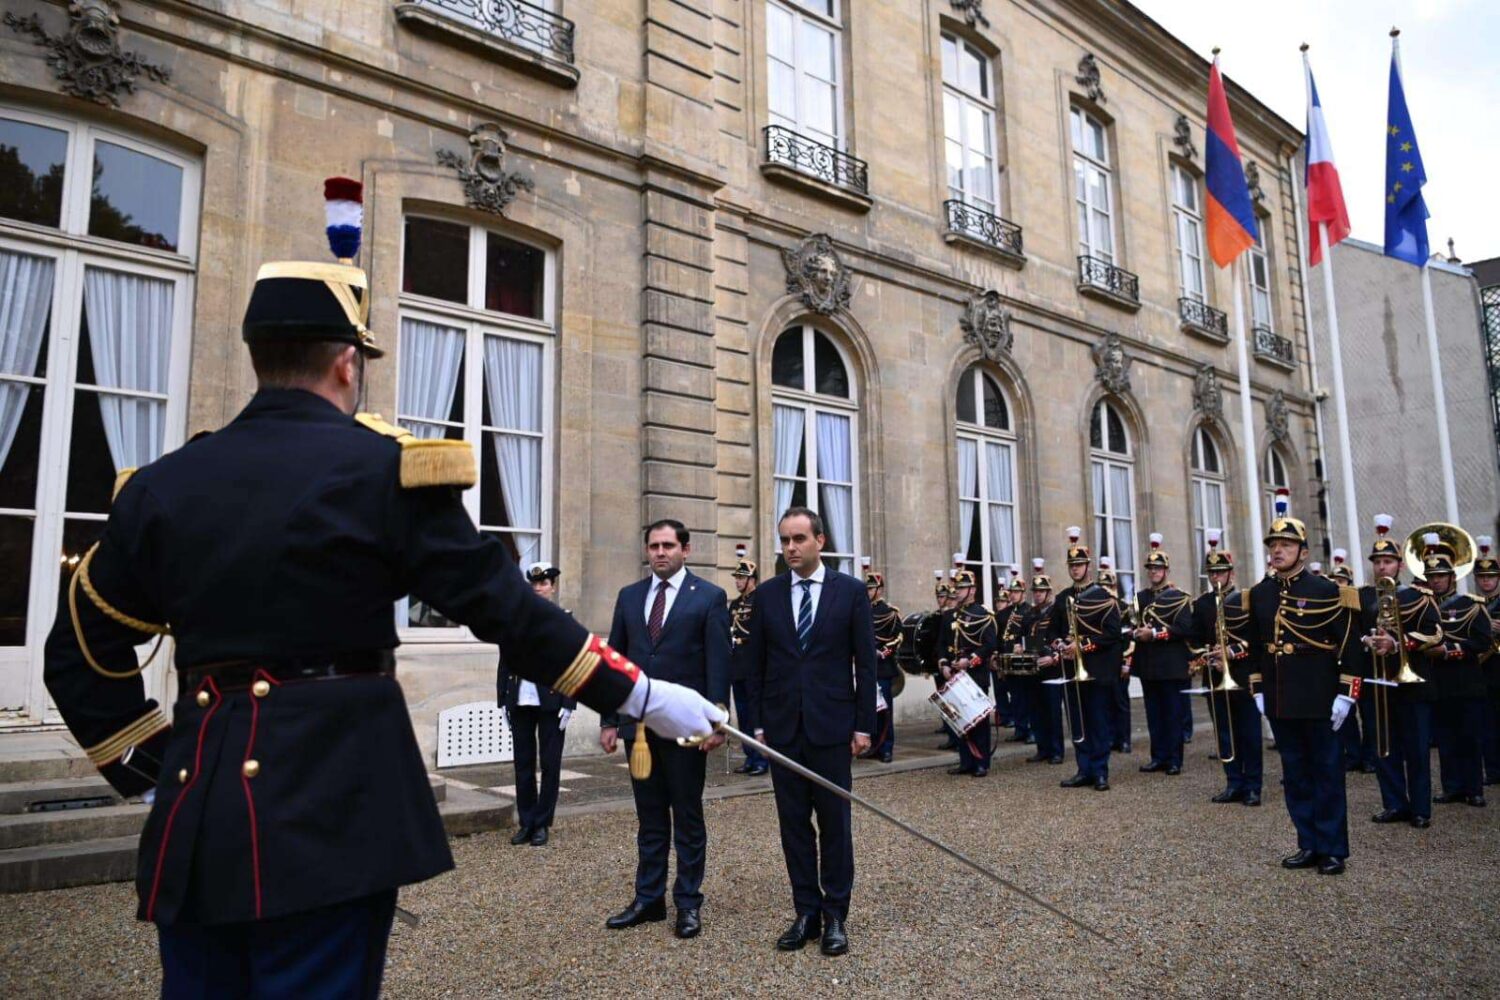 Ֆրանսիայի պաշտպանության նախարարությունը պատվիրակություն կուղարկի Հայաստան